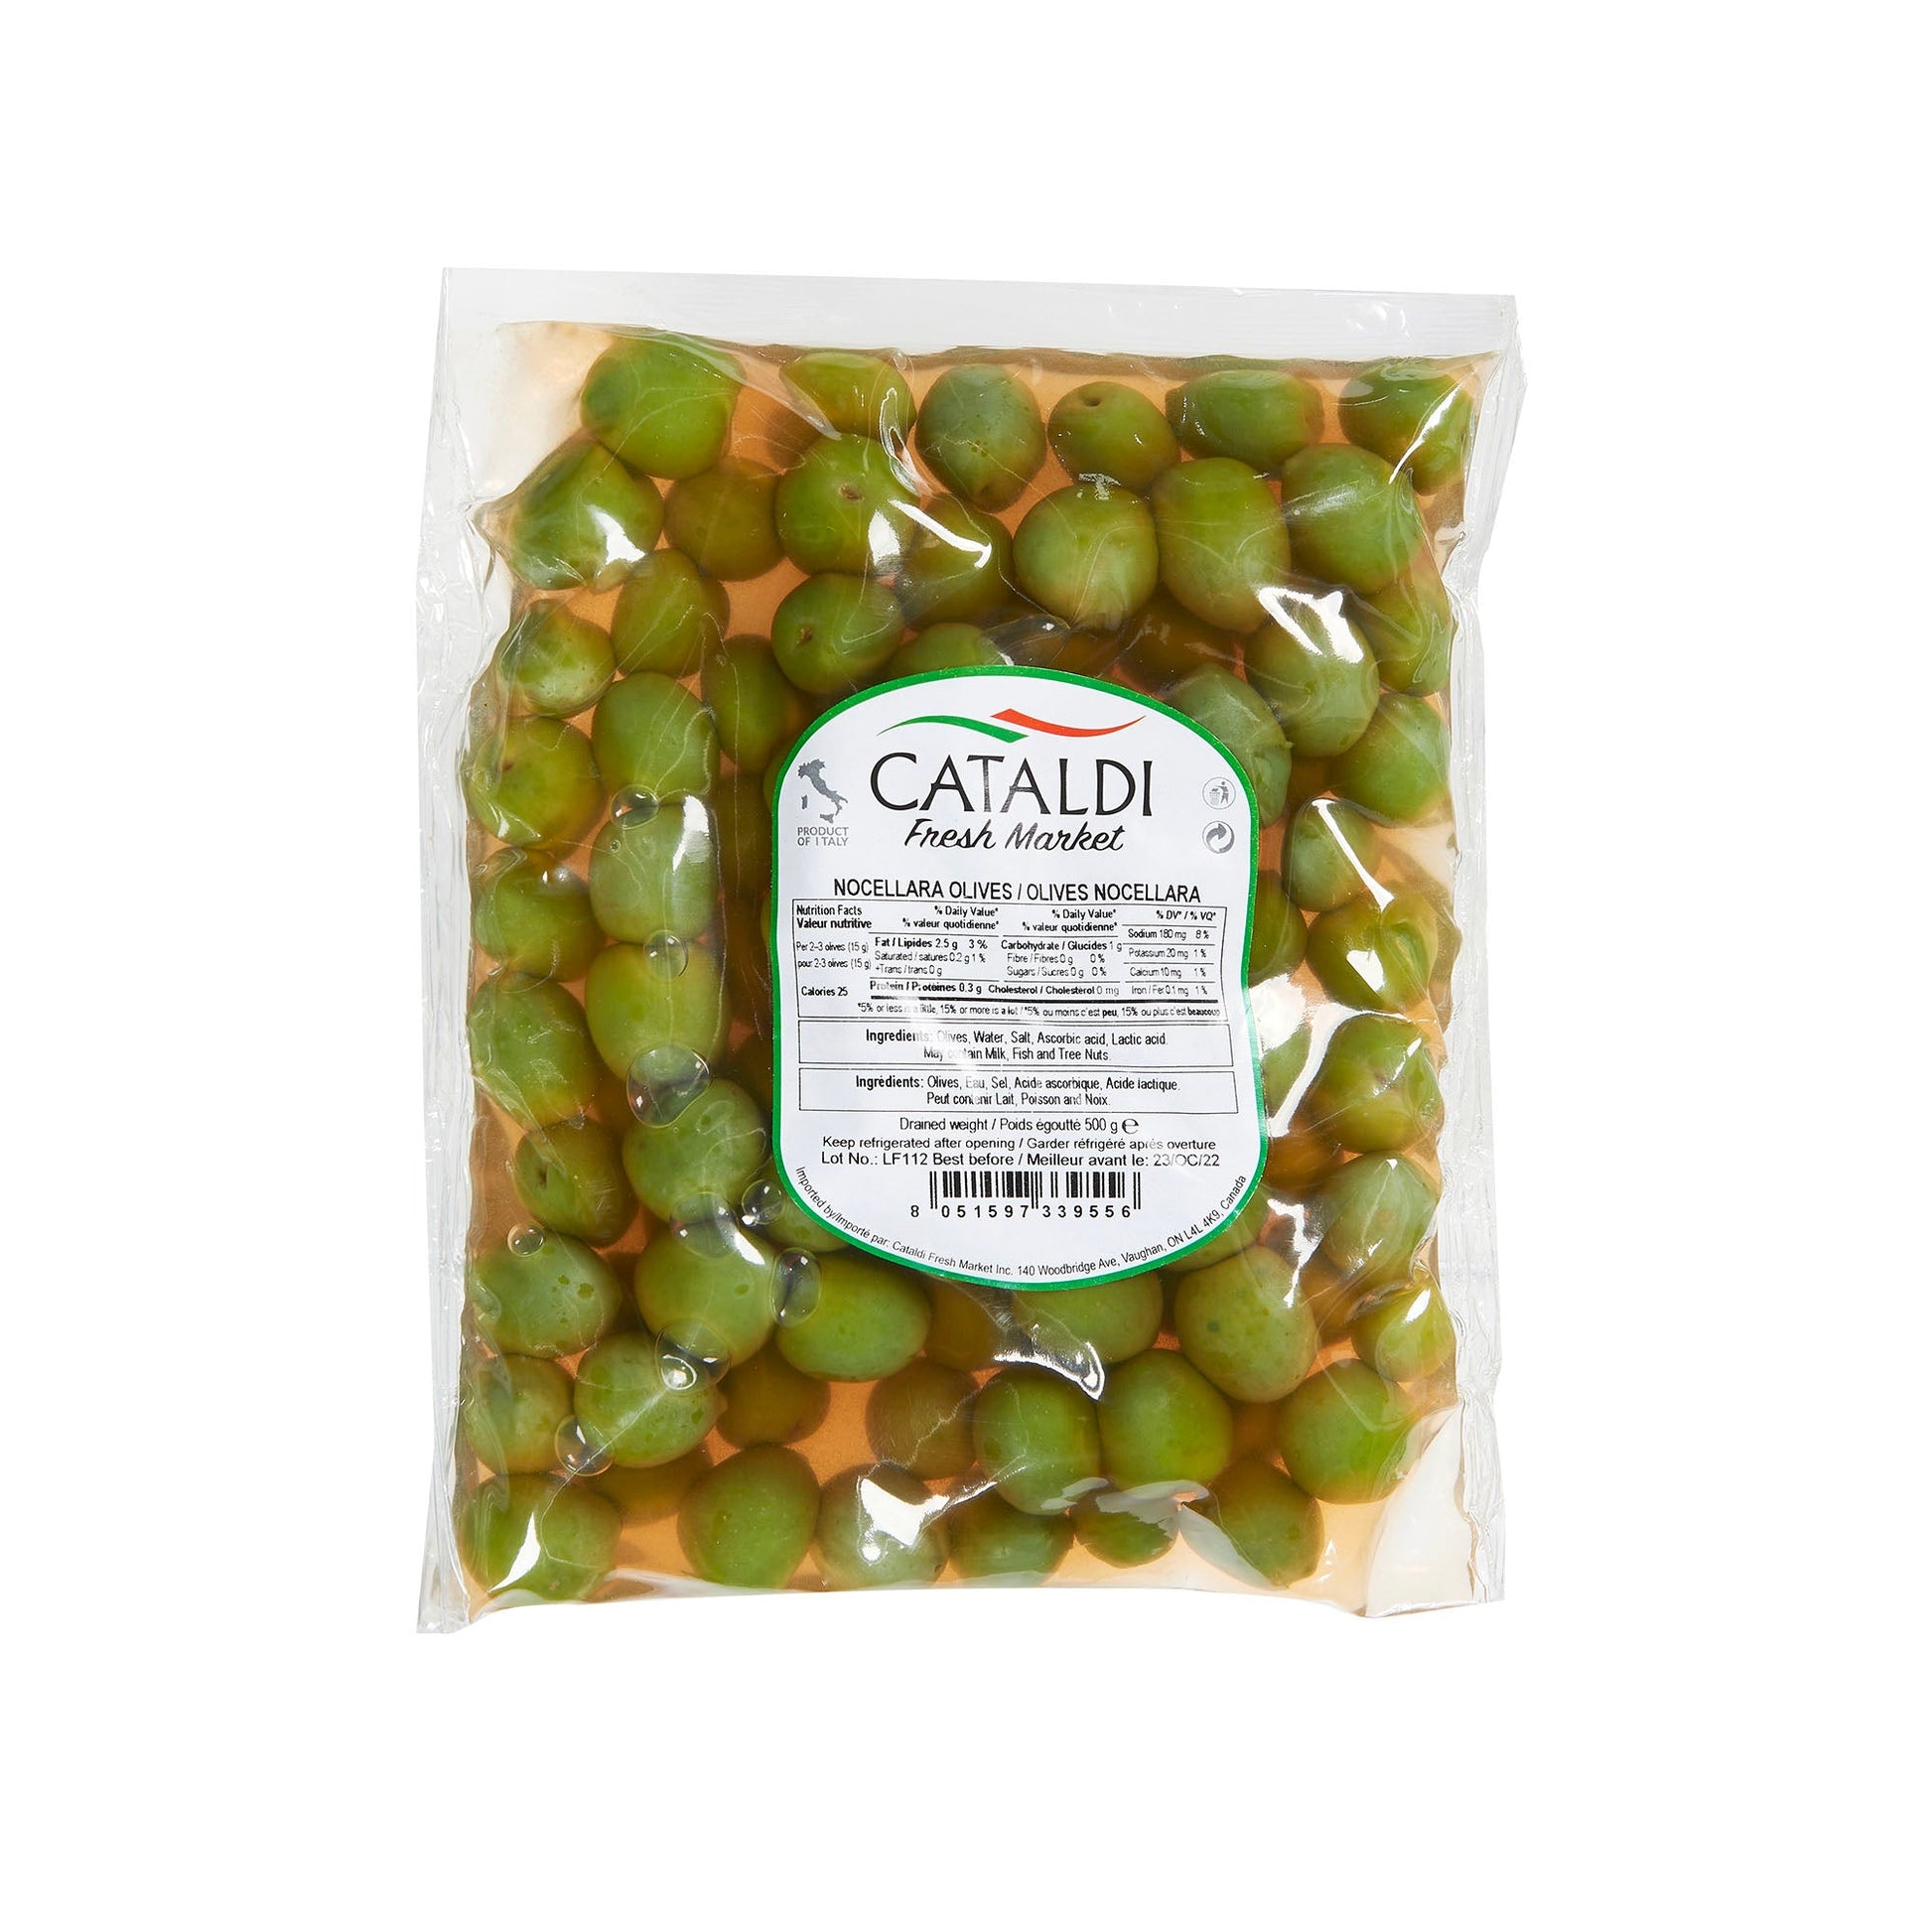 Cataldi Nocellara Olives 500g